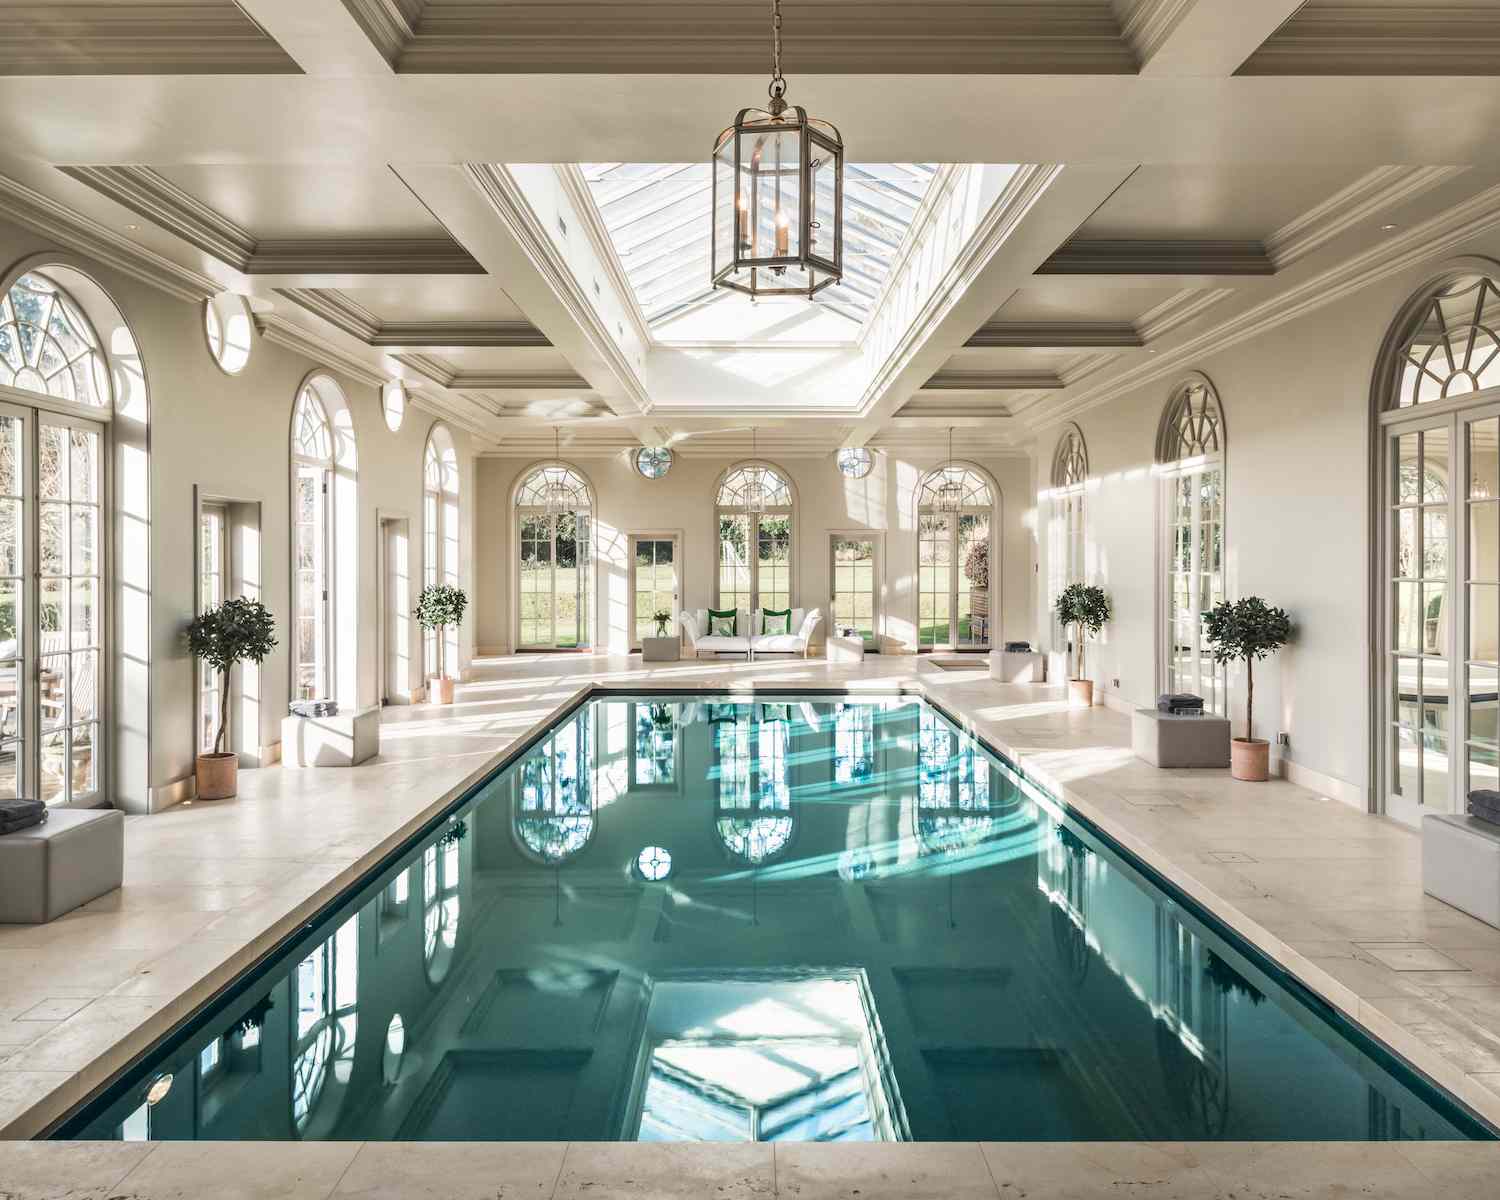 indoor pool ideas